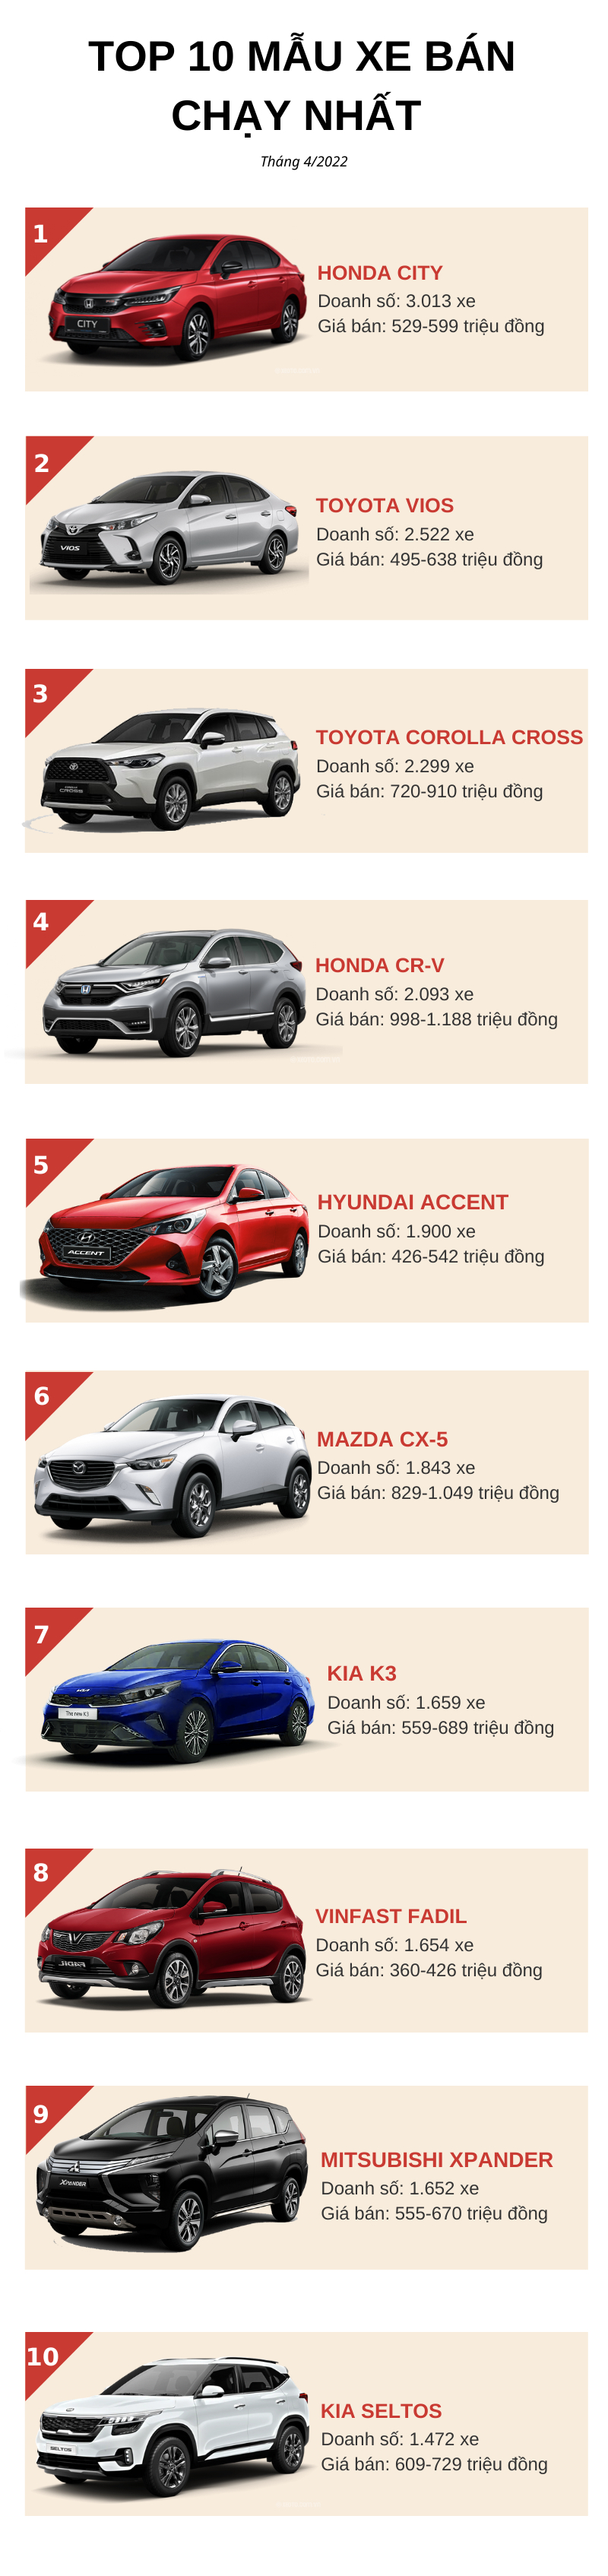 Top 10 Ô Tô Bán Chạy Nhất Tháng 4/2022: Ngôi Vương Đầy Bất Ngờ, Hyundai  Accent Và Fadil Cùng Tụt Hạng